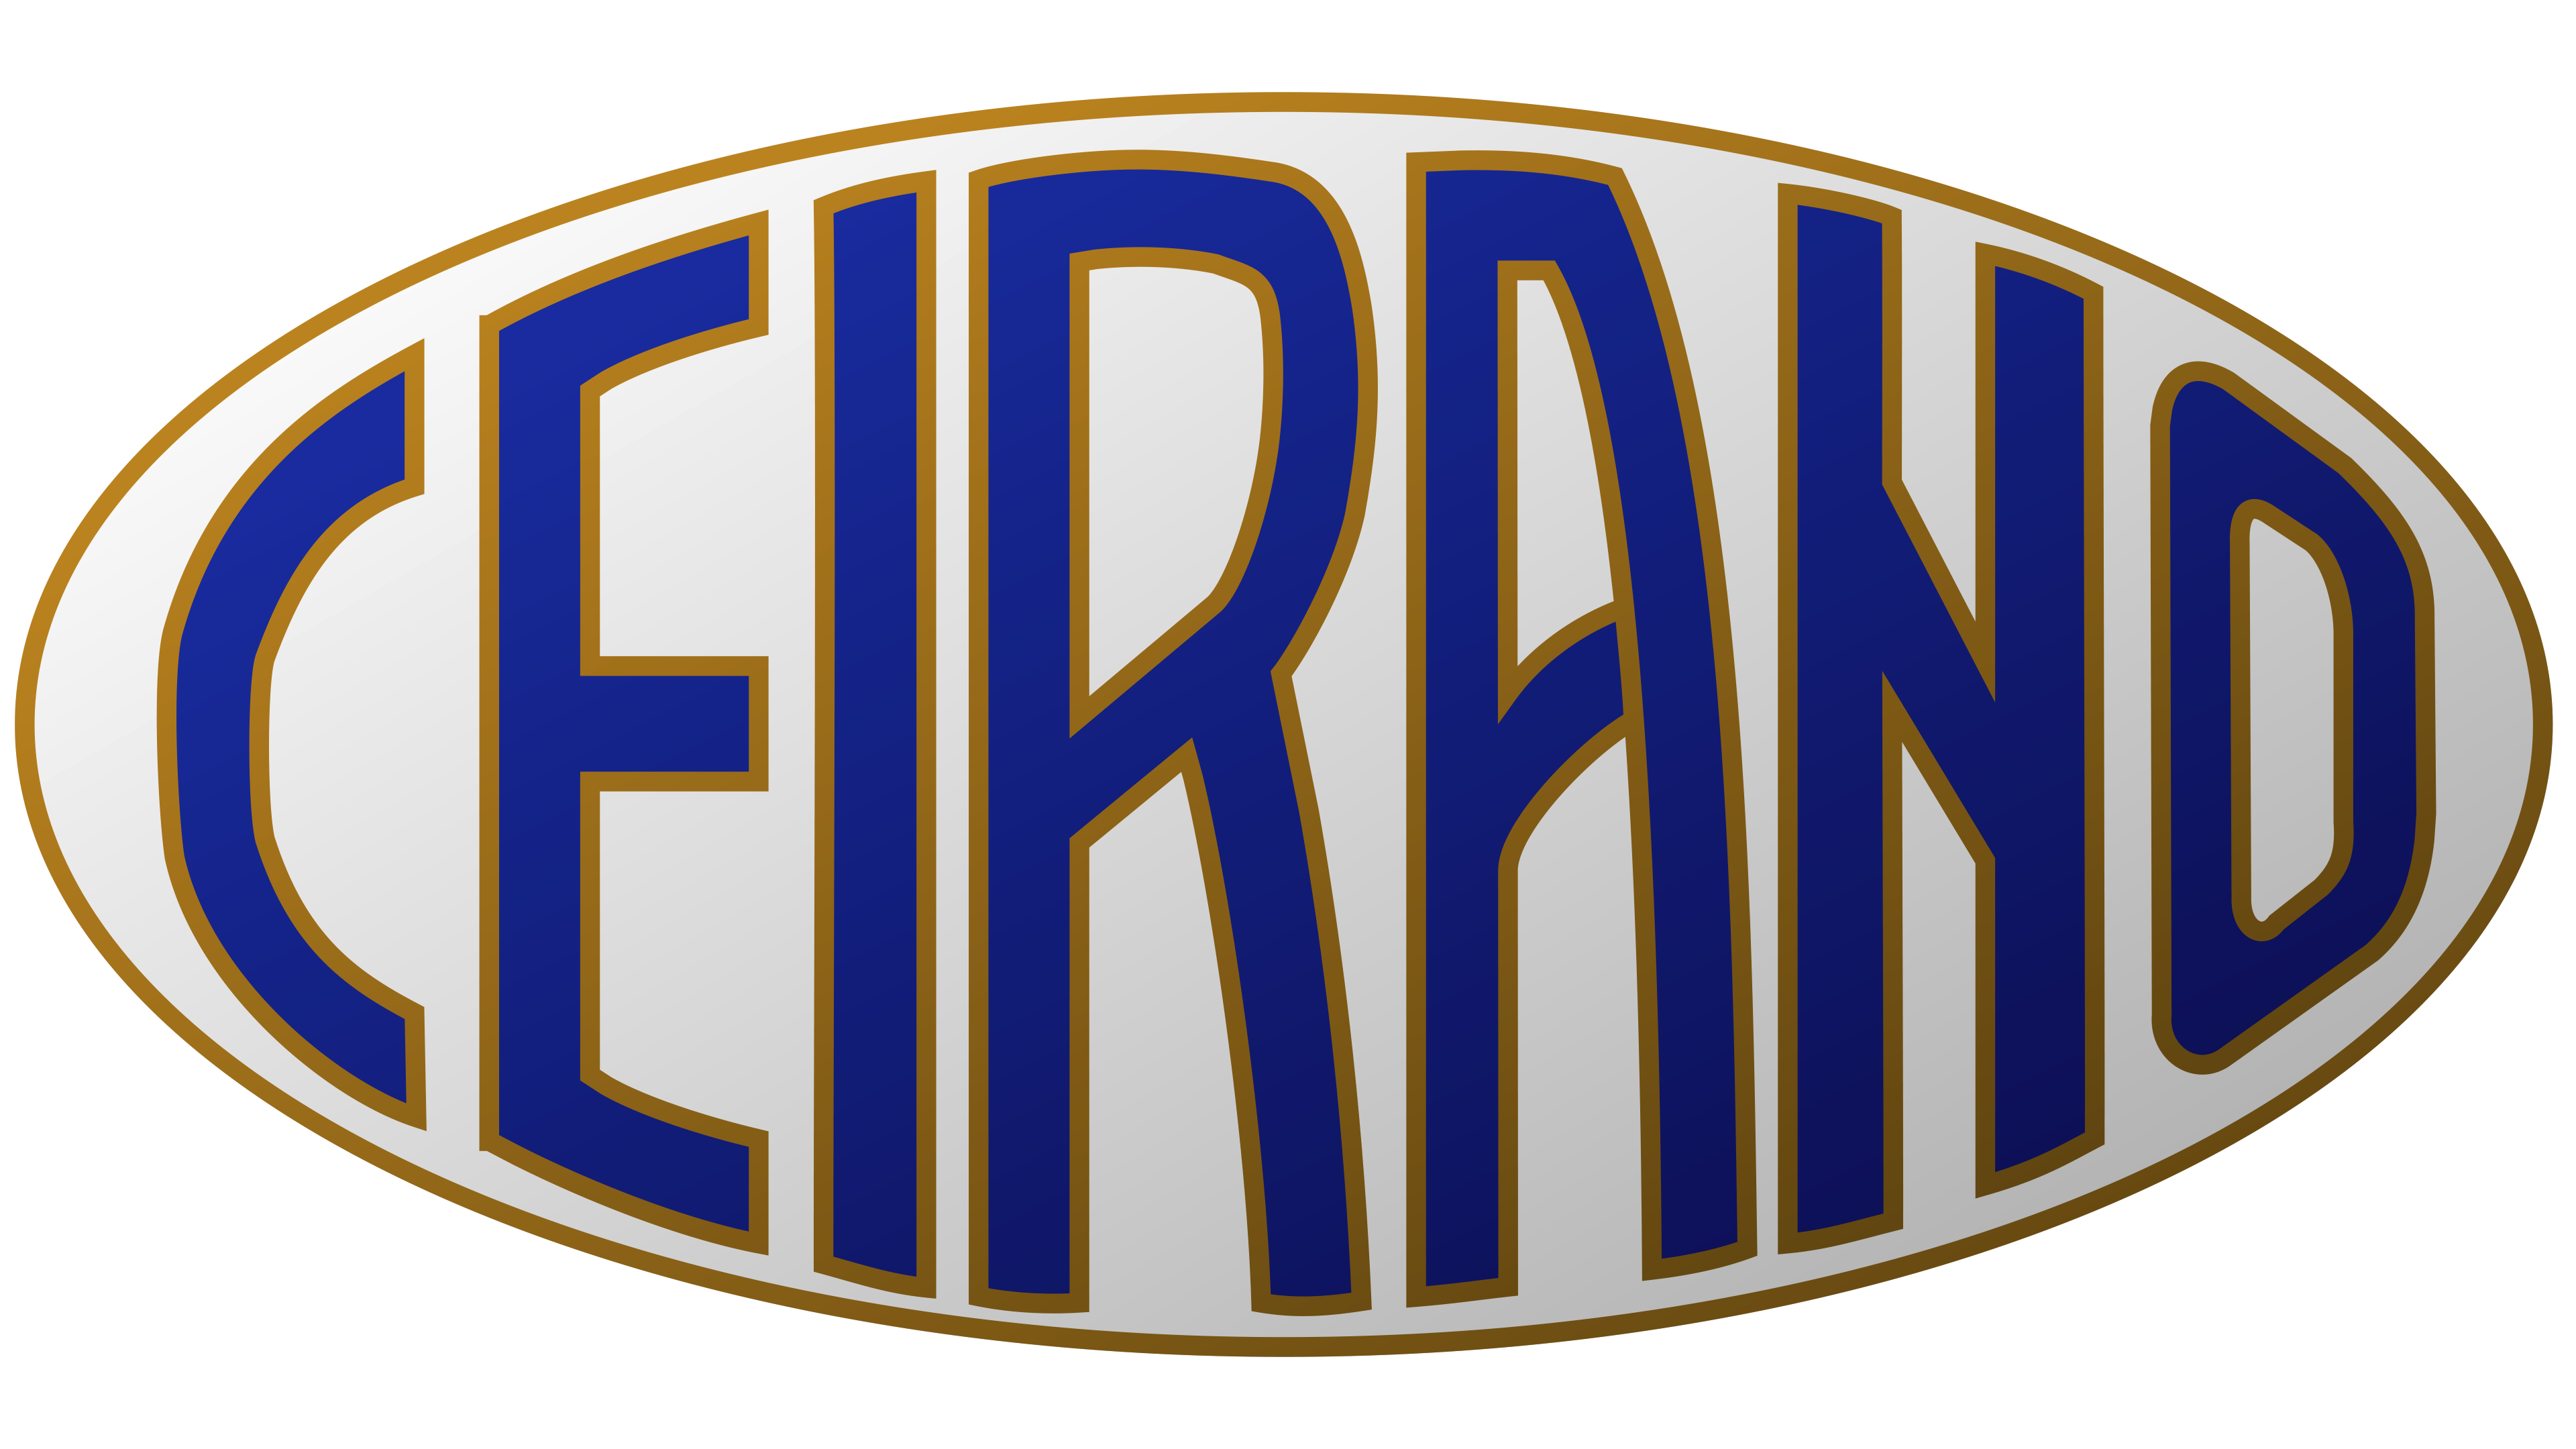 Ceirano Transparent Logo PNG